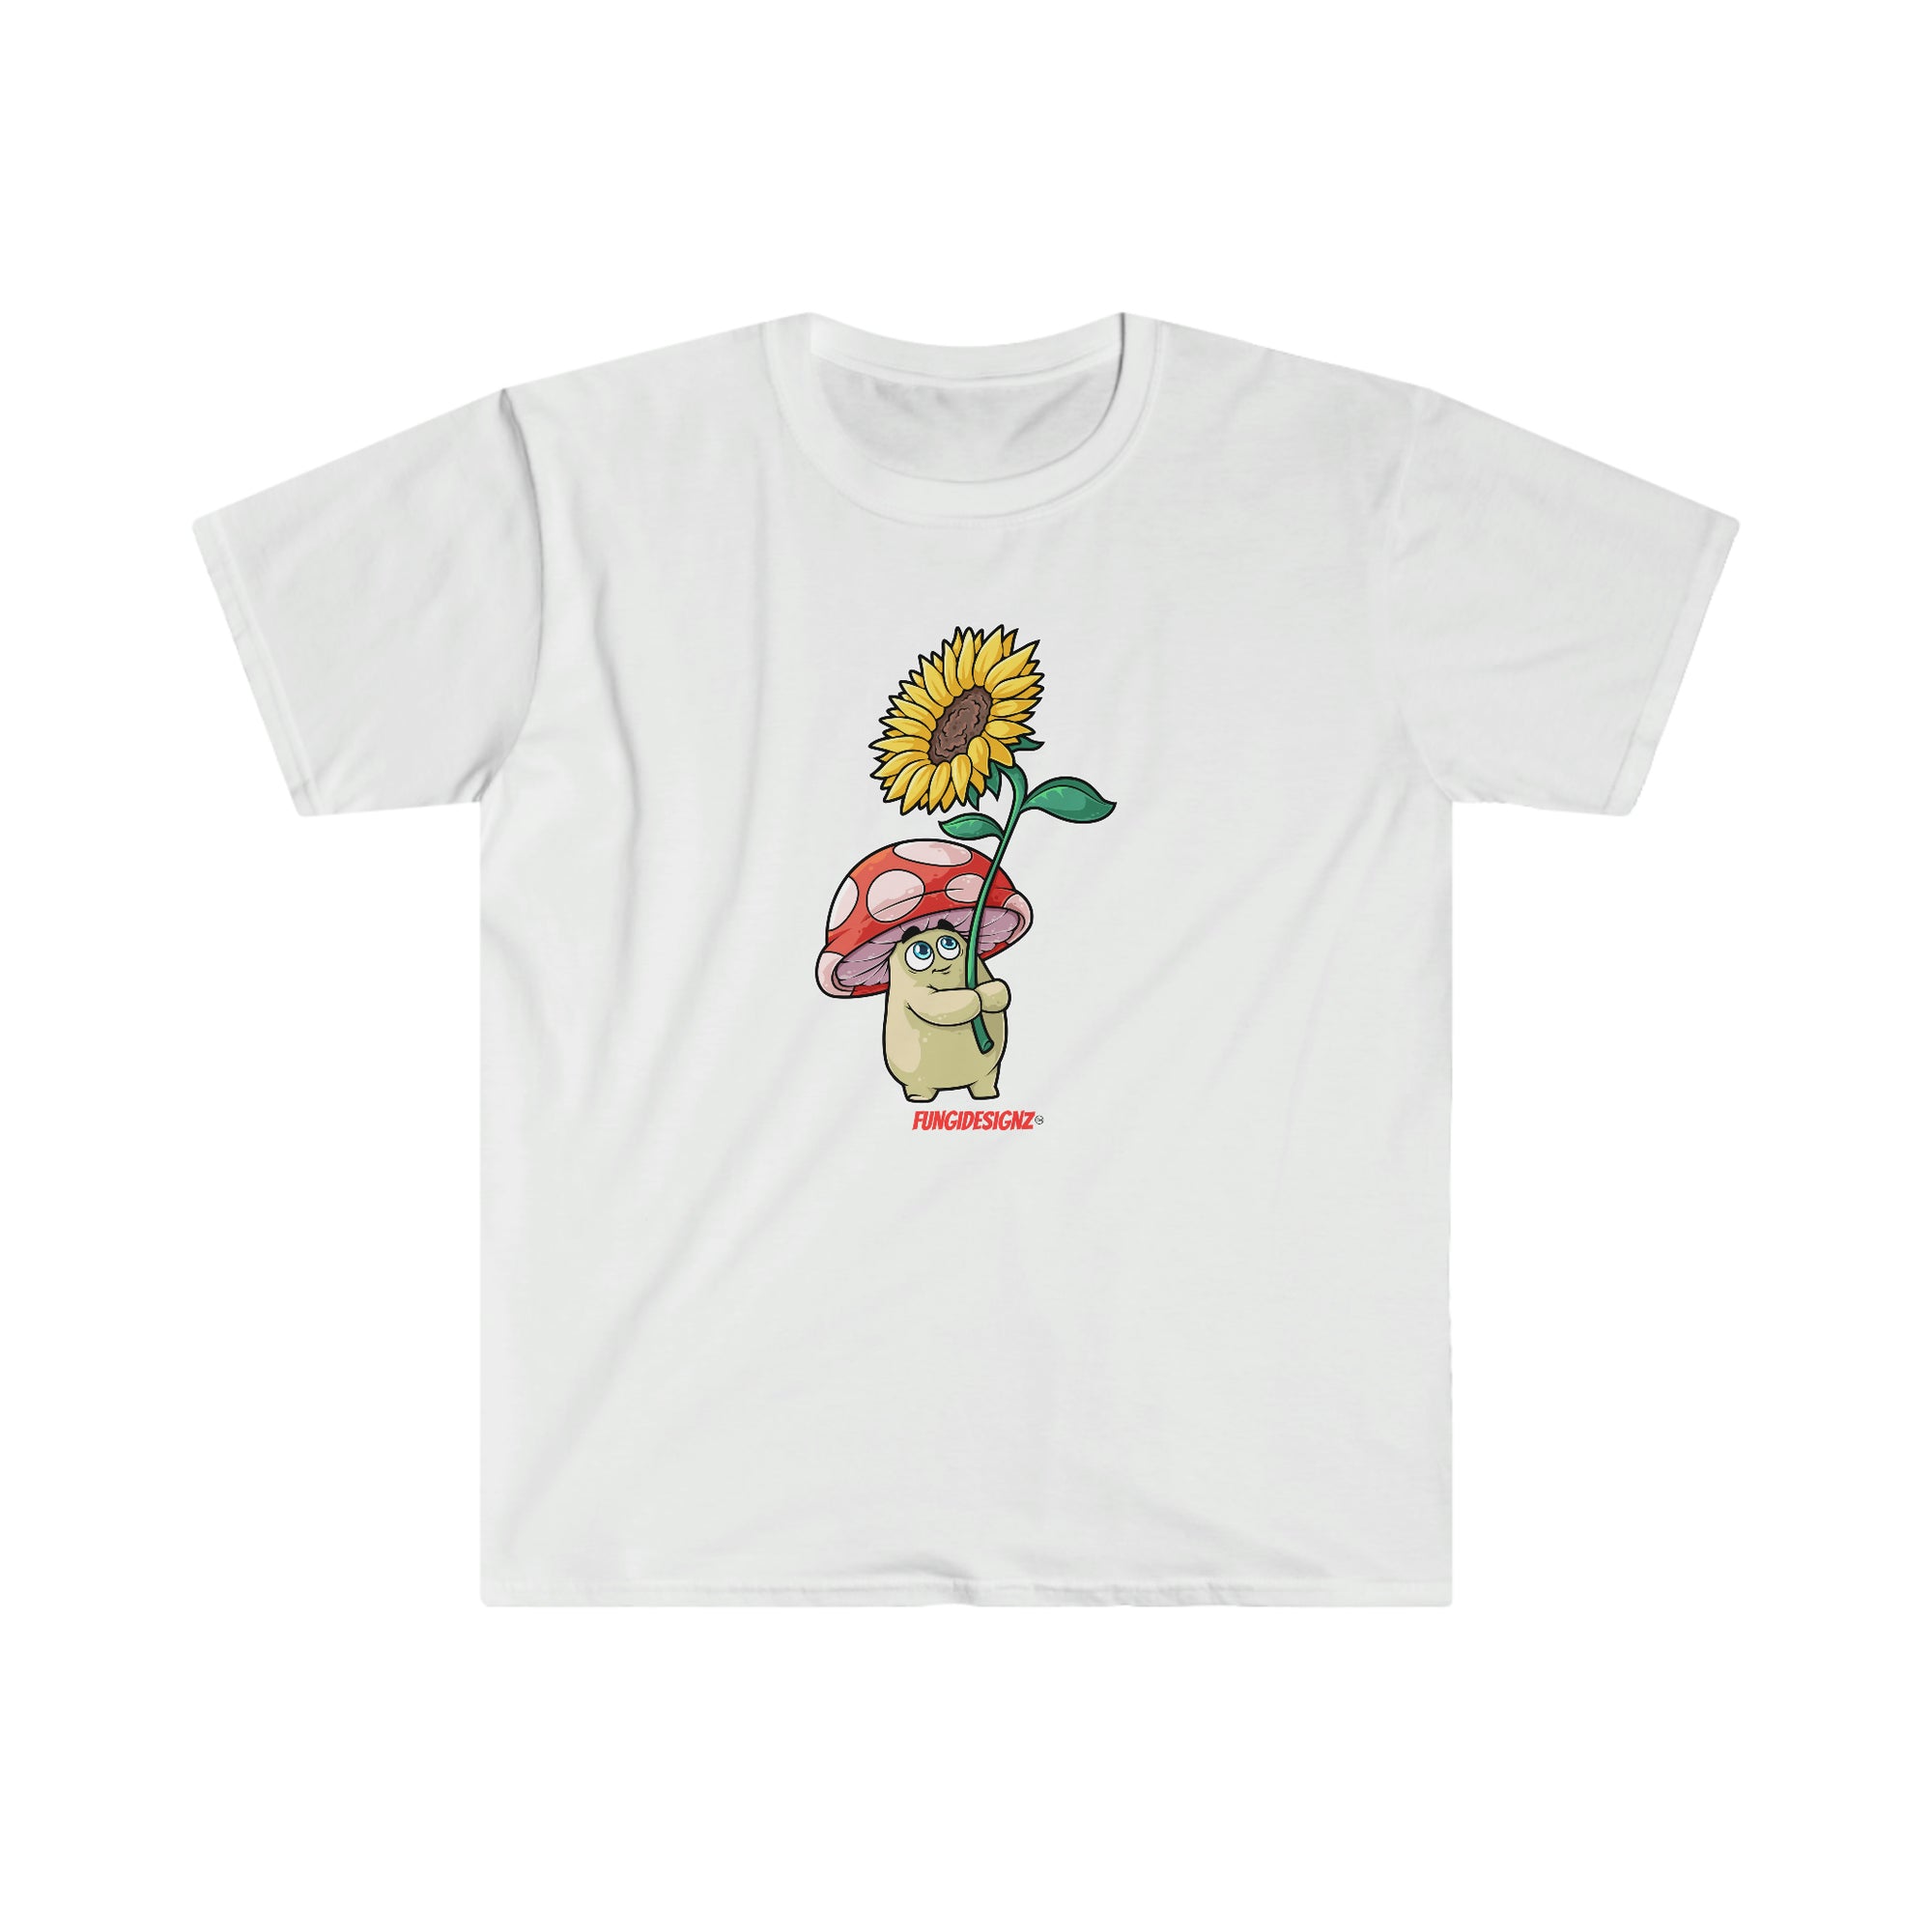 Myco The Amanita - Mushroom T-Shirt